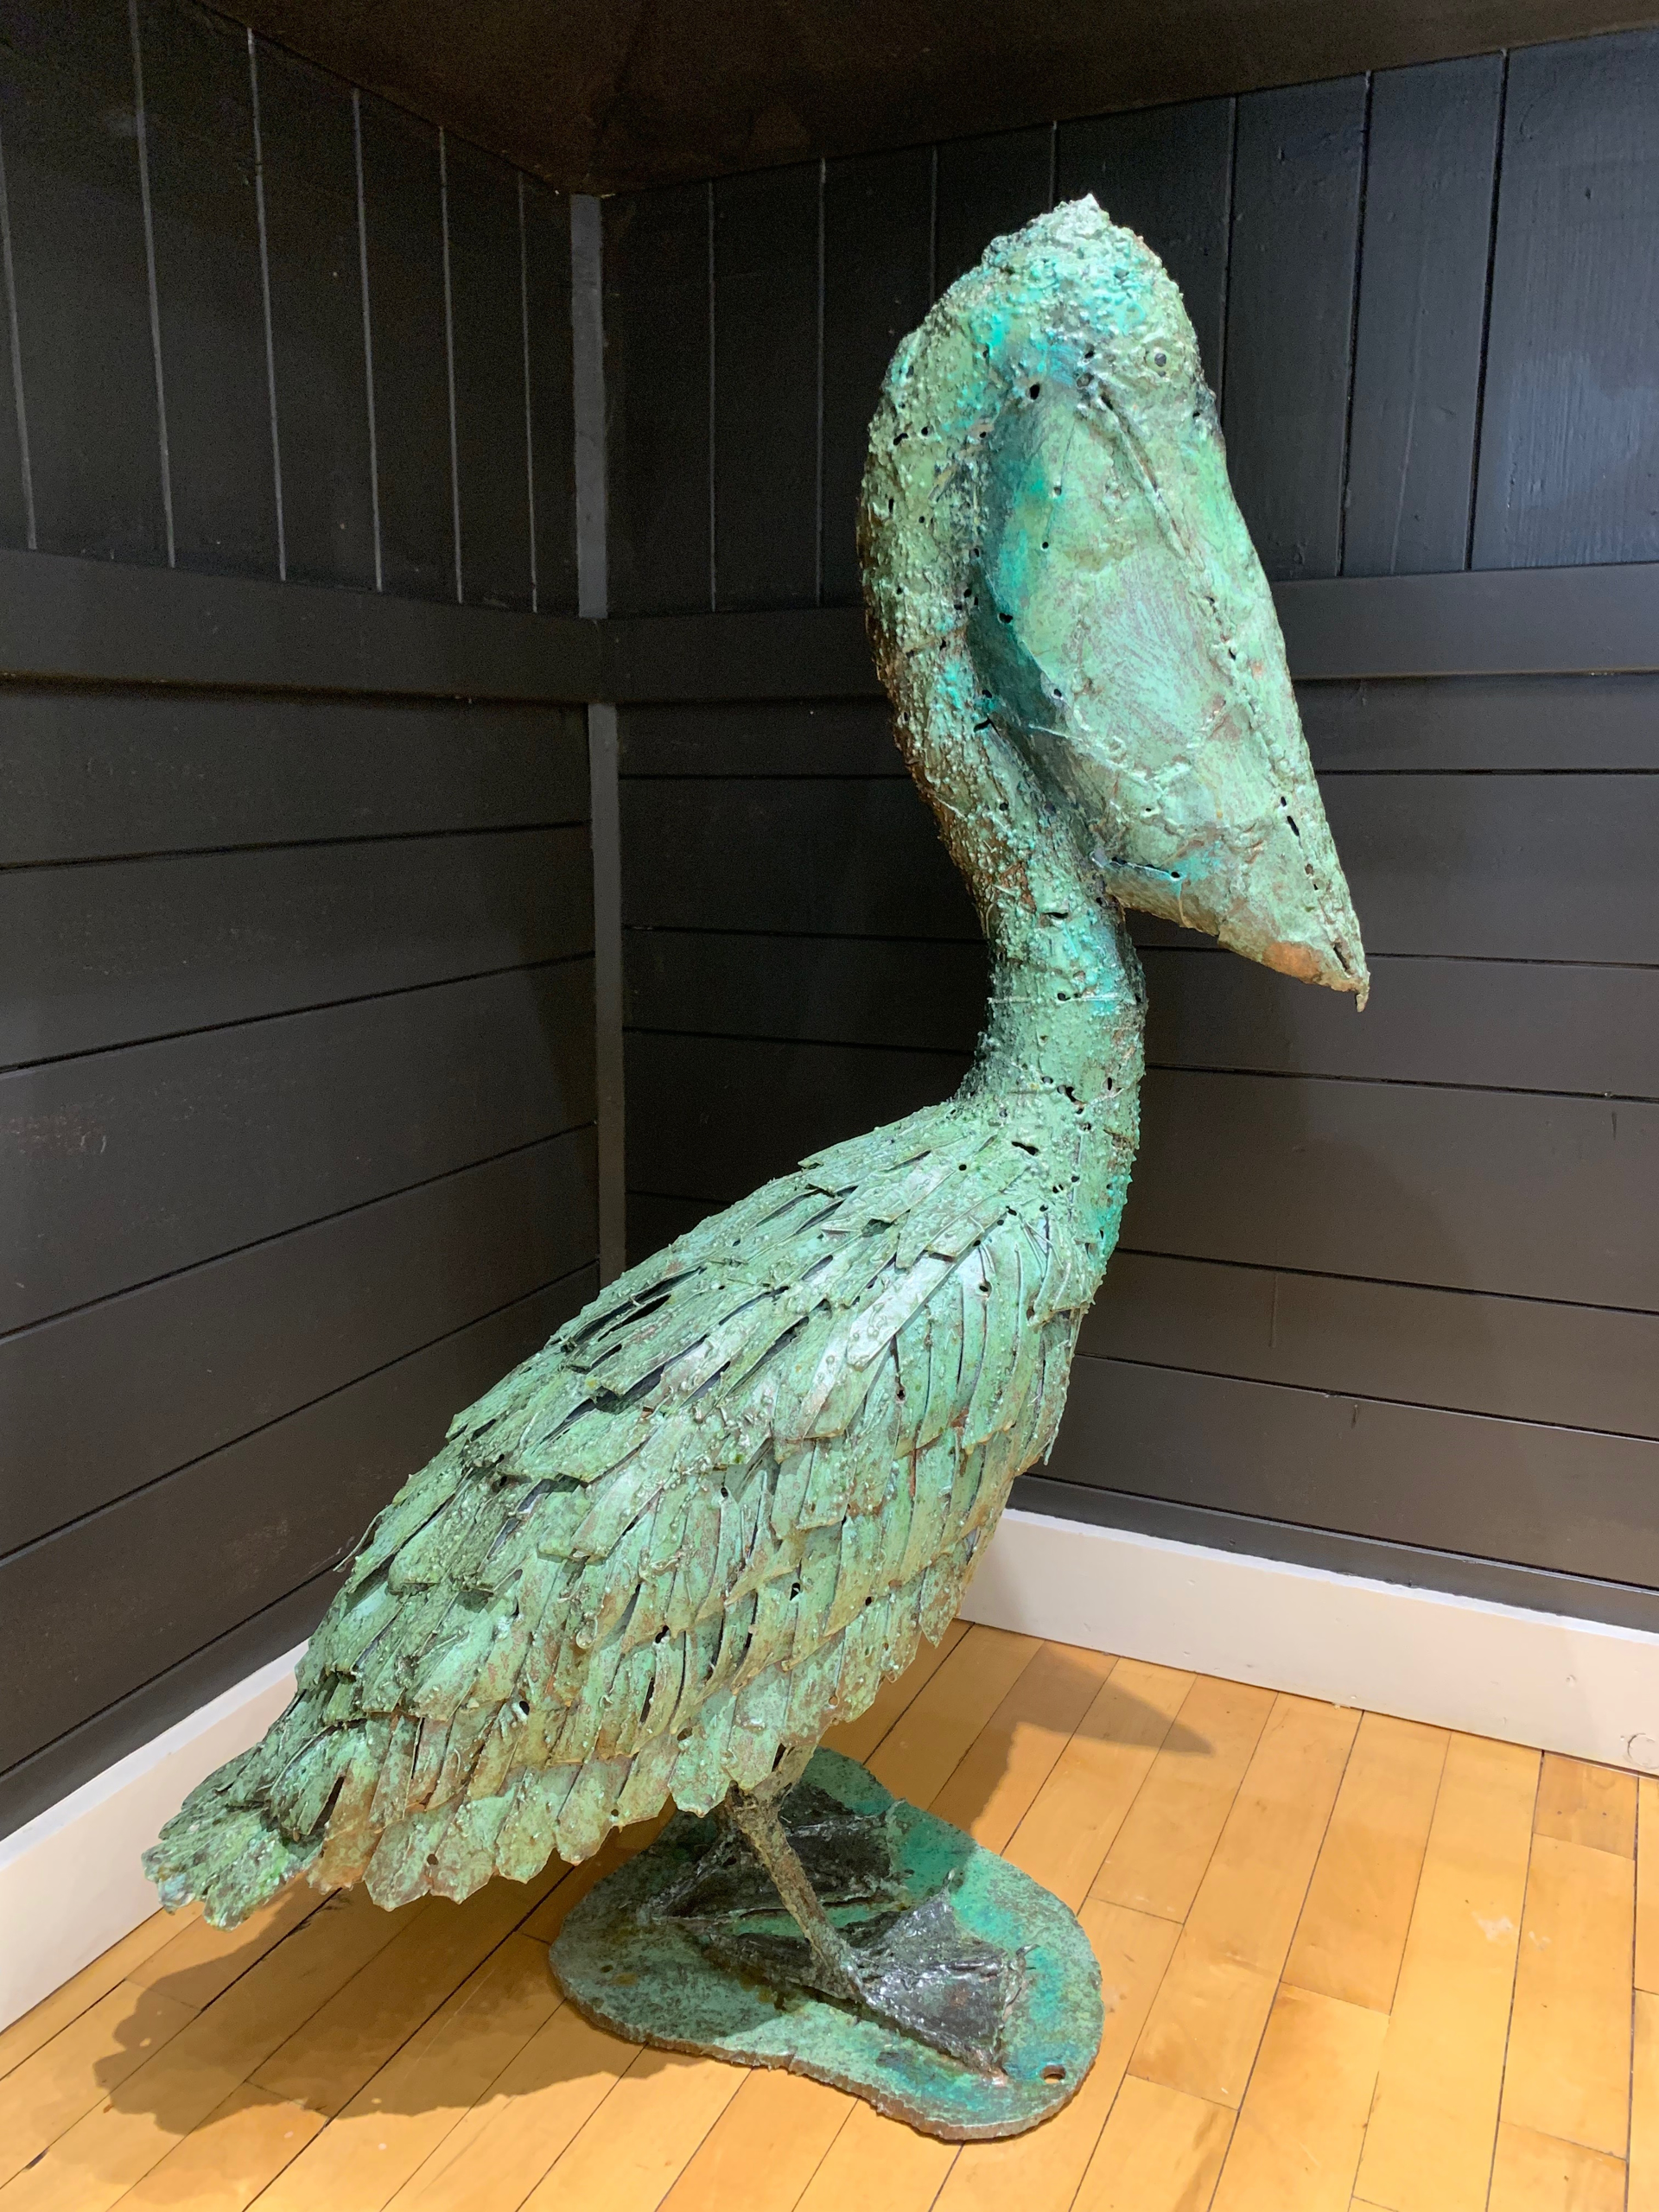 Pelican by William Allen